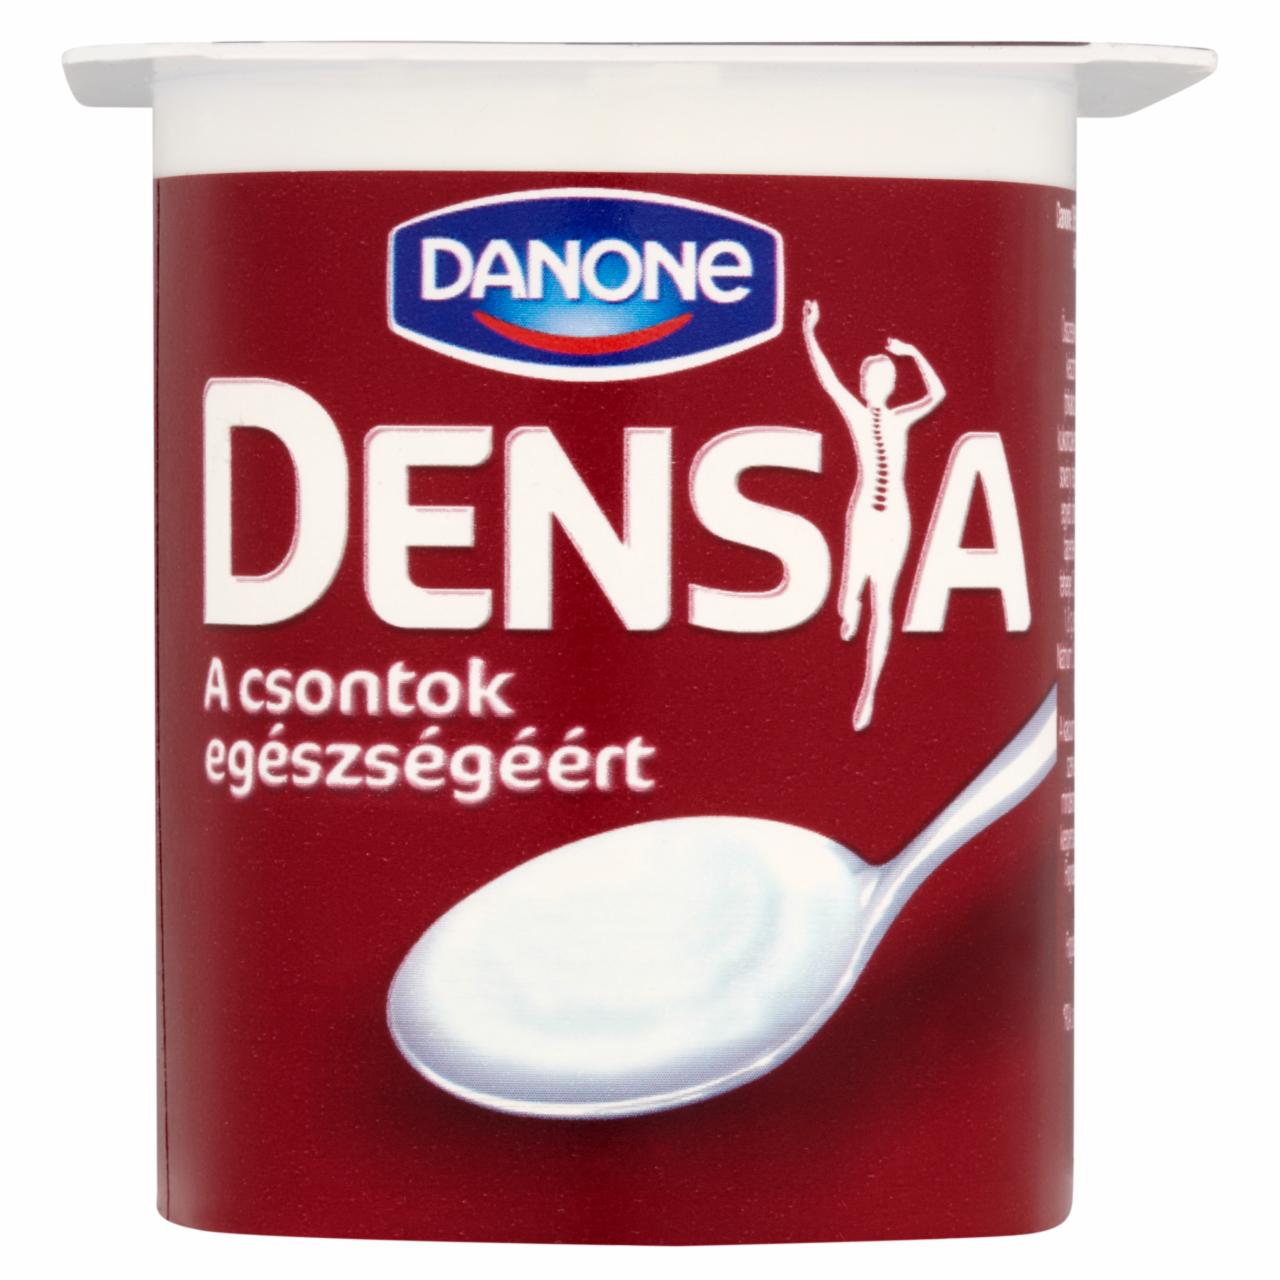 Képek - Danone Densia kalciummal és D-vitaminnal dúsított, élőflórás, zsírszegény natúr joghurt 125 g